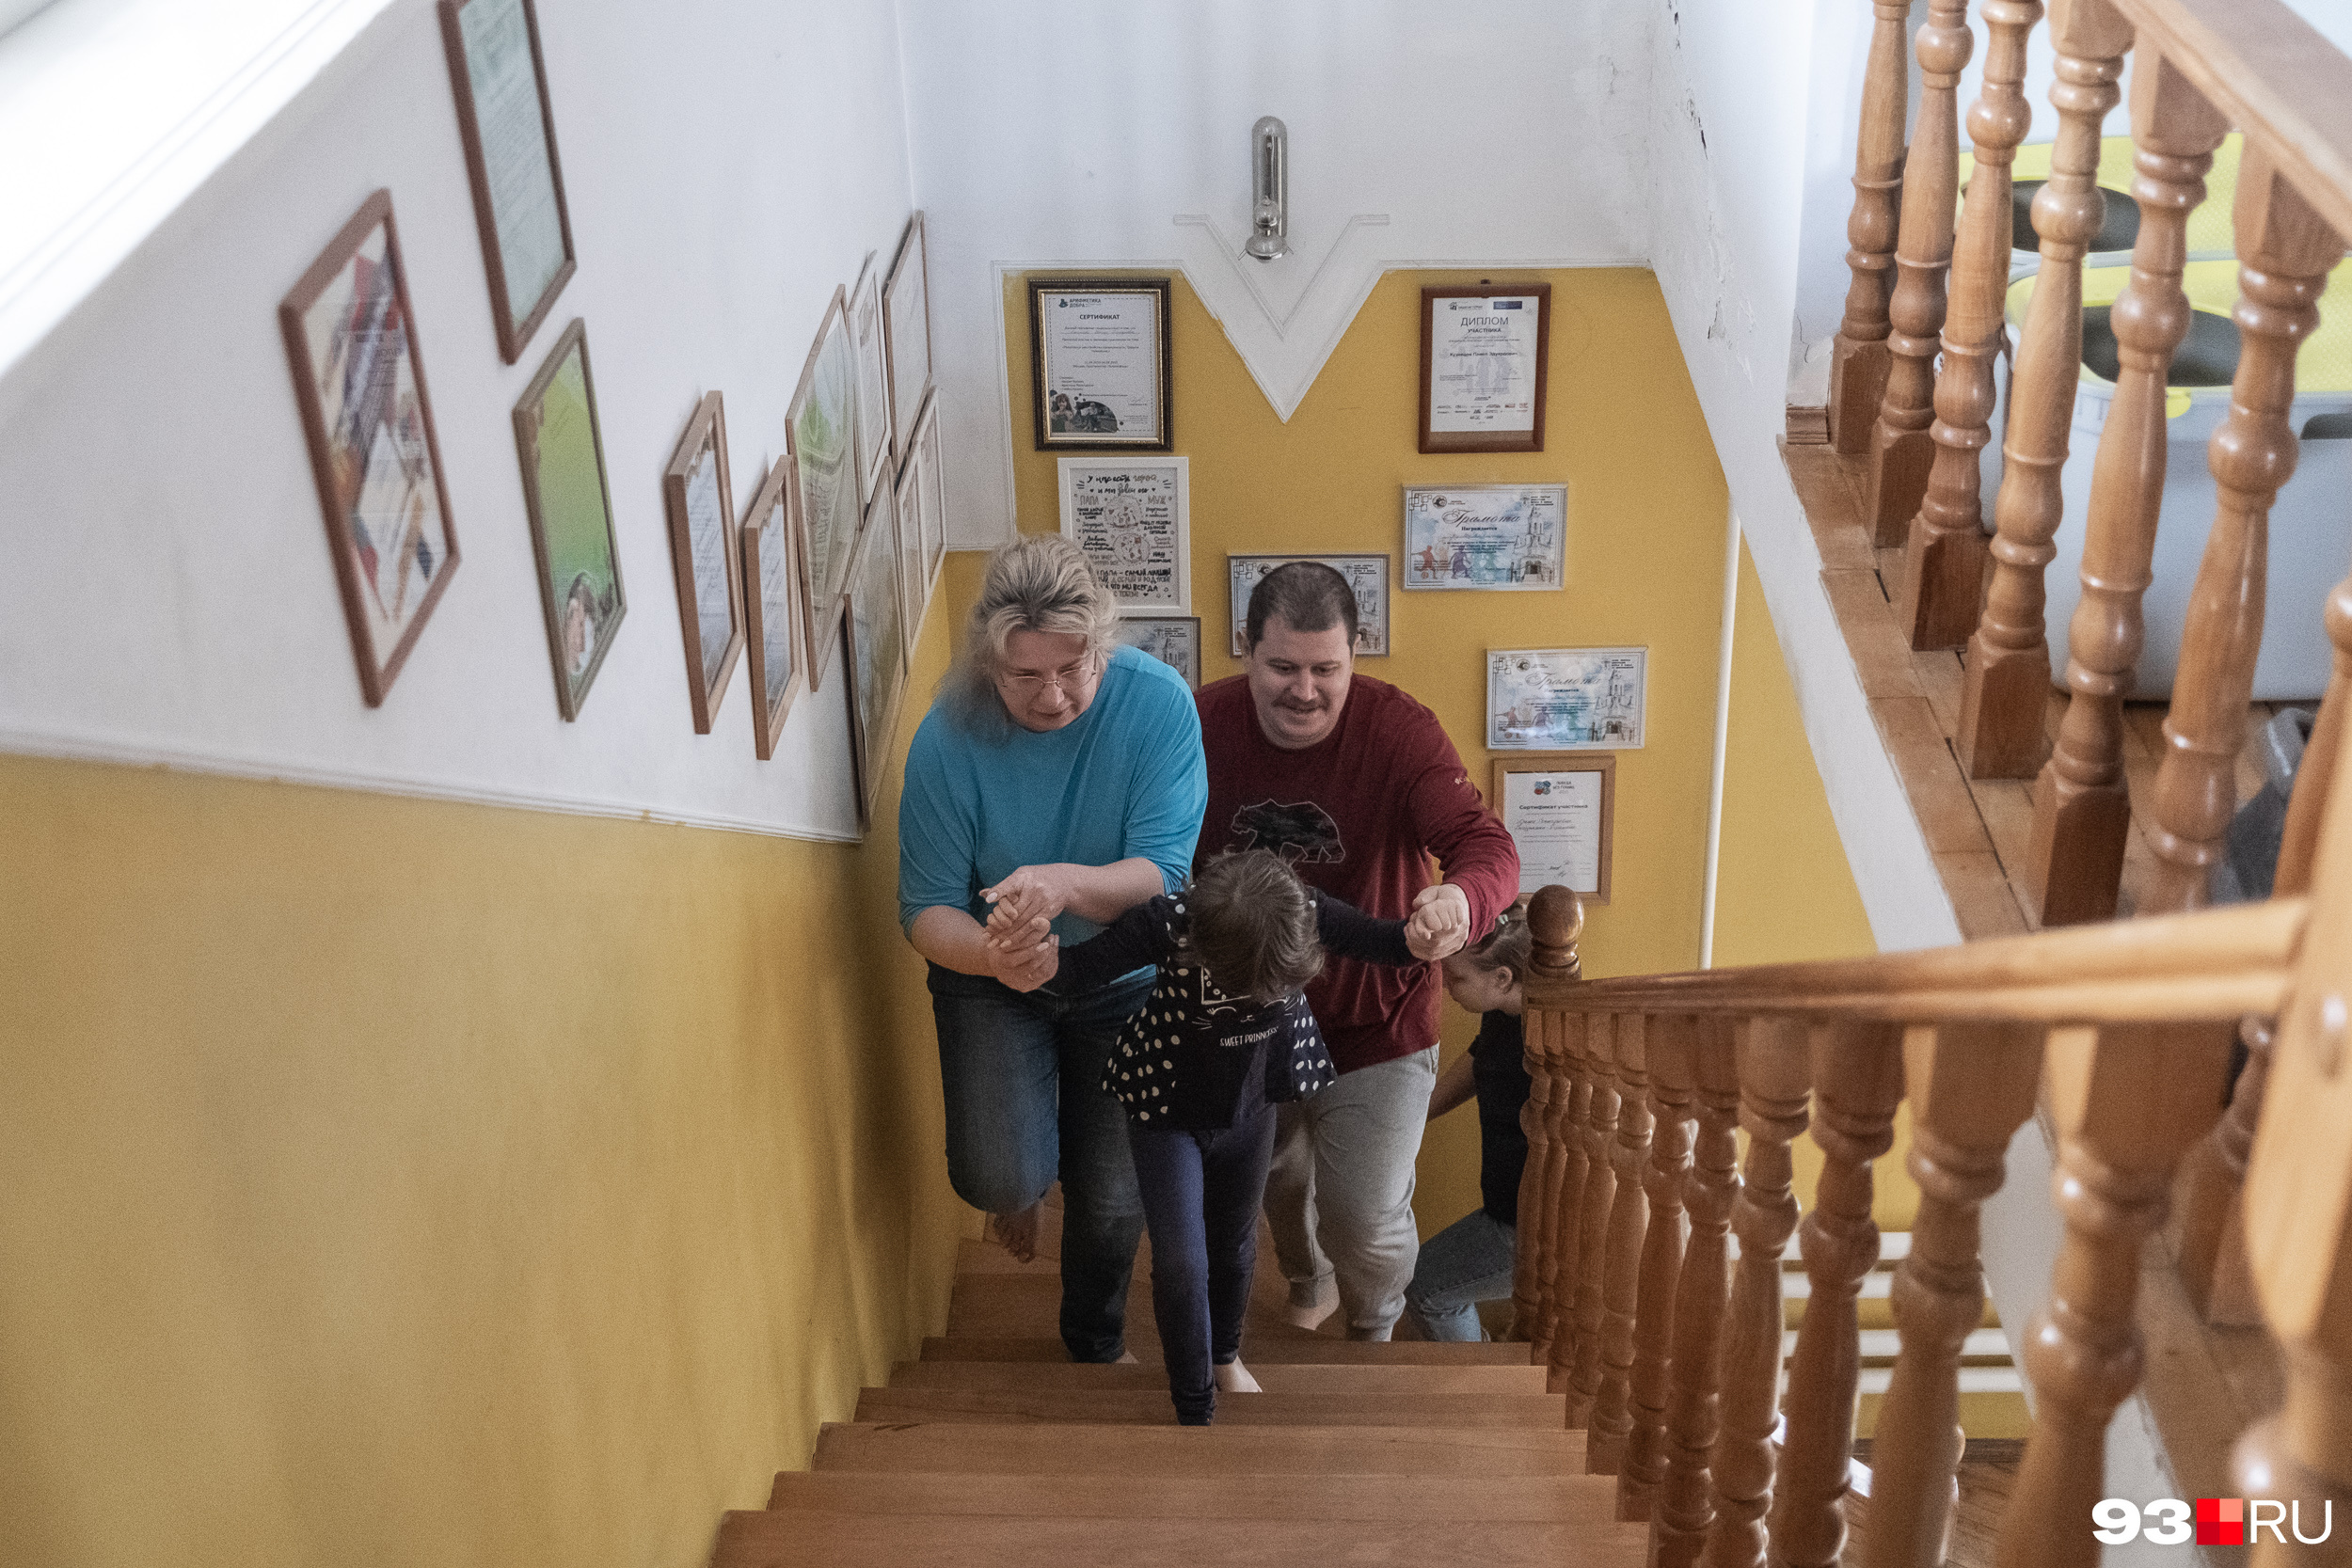 Ирина и Александр помогают Маше подняться по ступенькам. Сделать это самостоятельно девочка не может